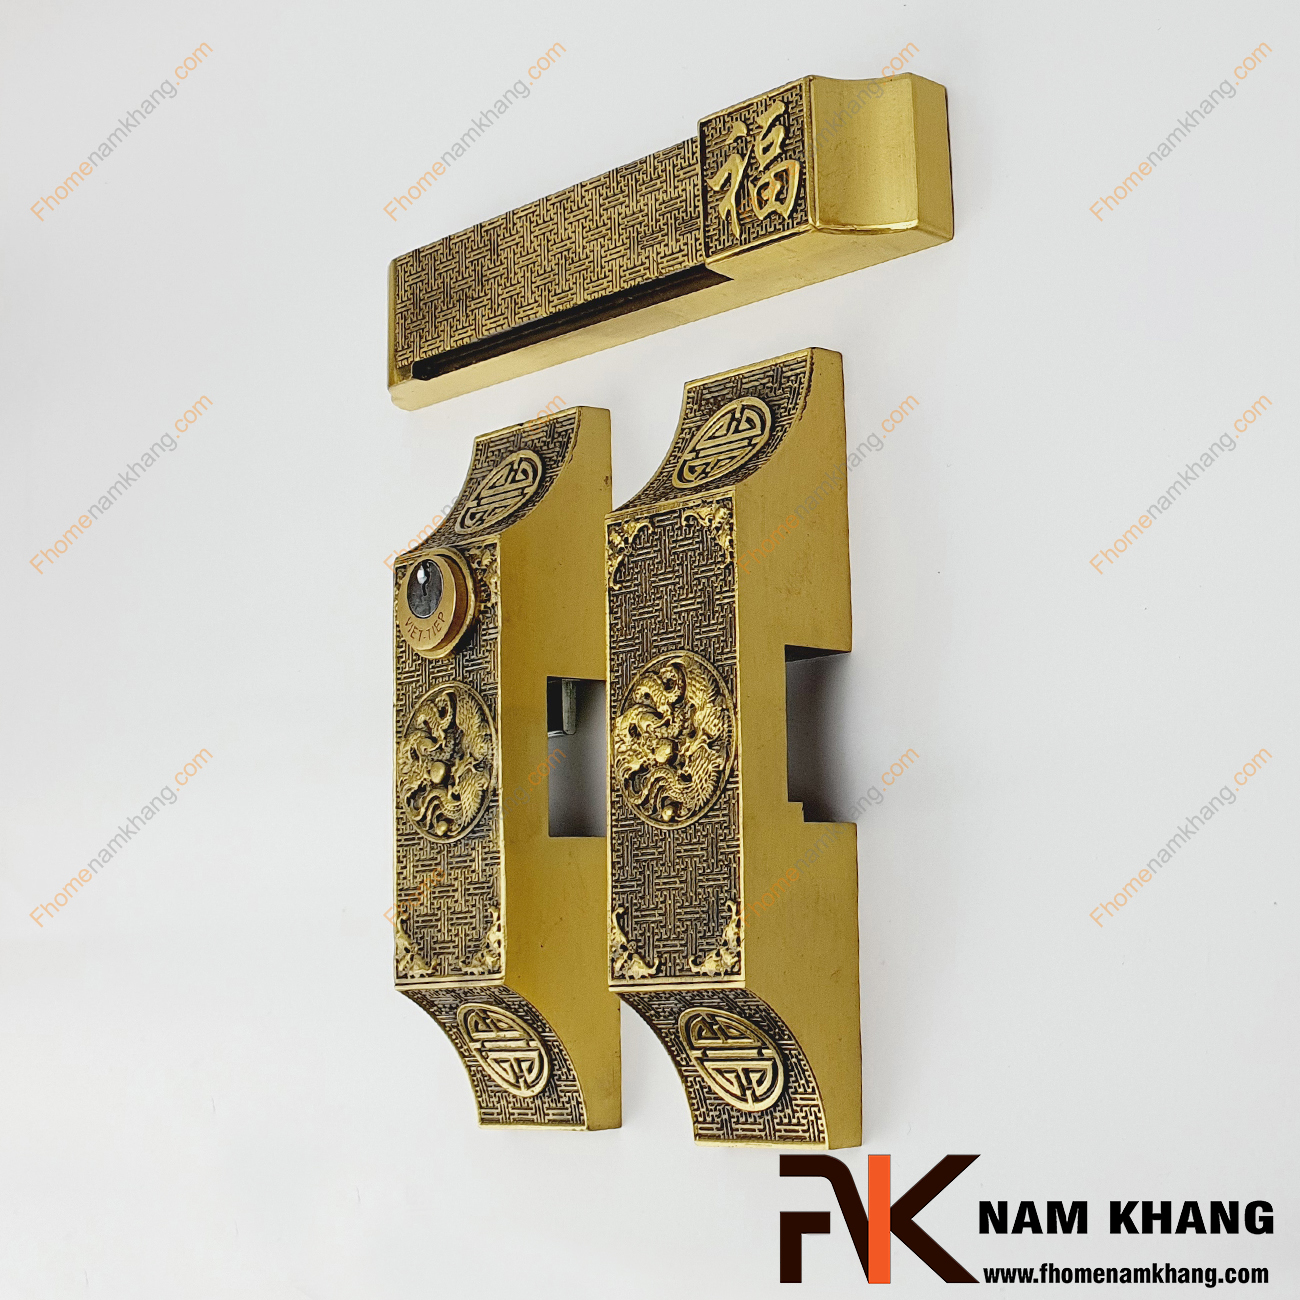 Khóa cửa bức bàn bằng đồng cao cấp NK580-C hay còn gọi là khóa cửa bích bàn, có thiết kế theo kiểu then cài và có thanh chốt bằng đồng đúc.